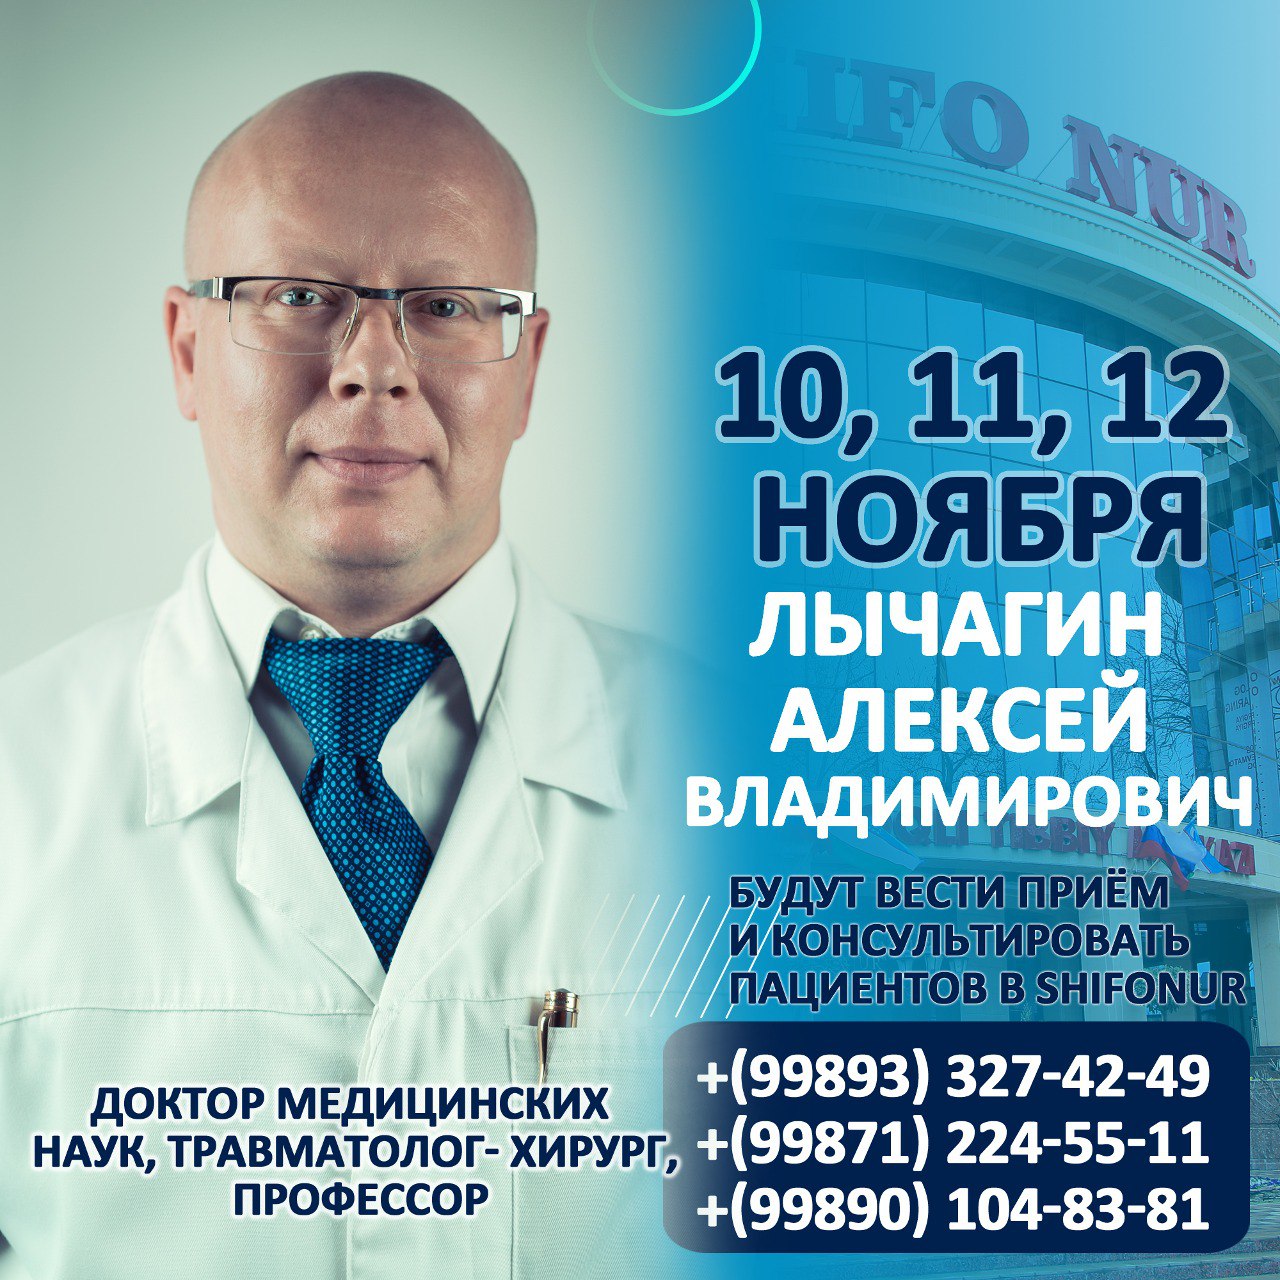 Лычагин Алексей Владимирович будут вести приём и консультировать пациентов в SHIFO NUR